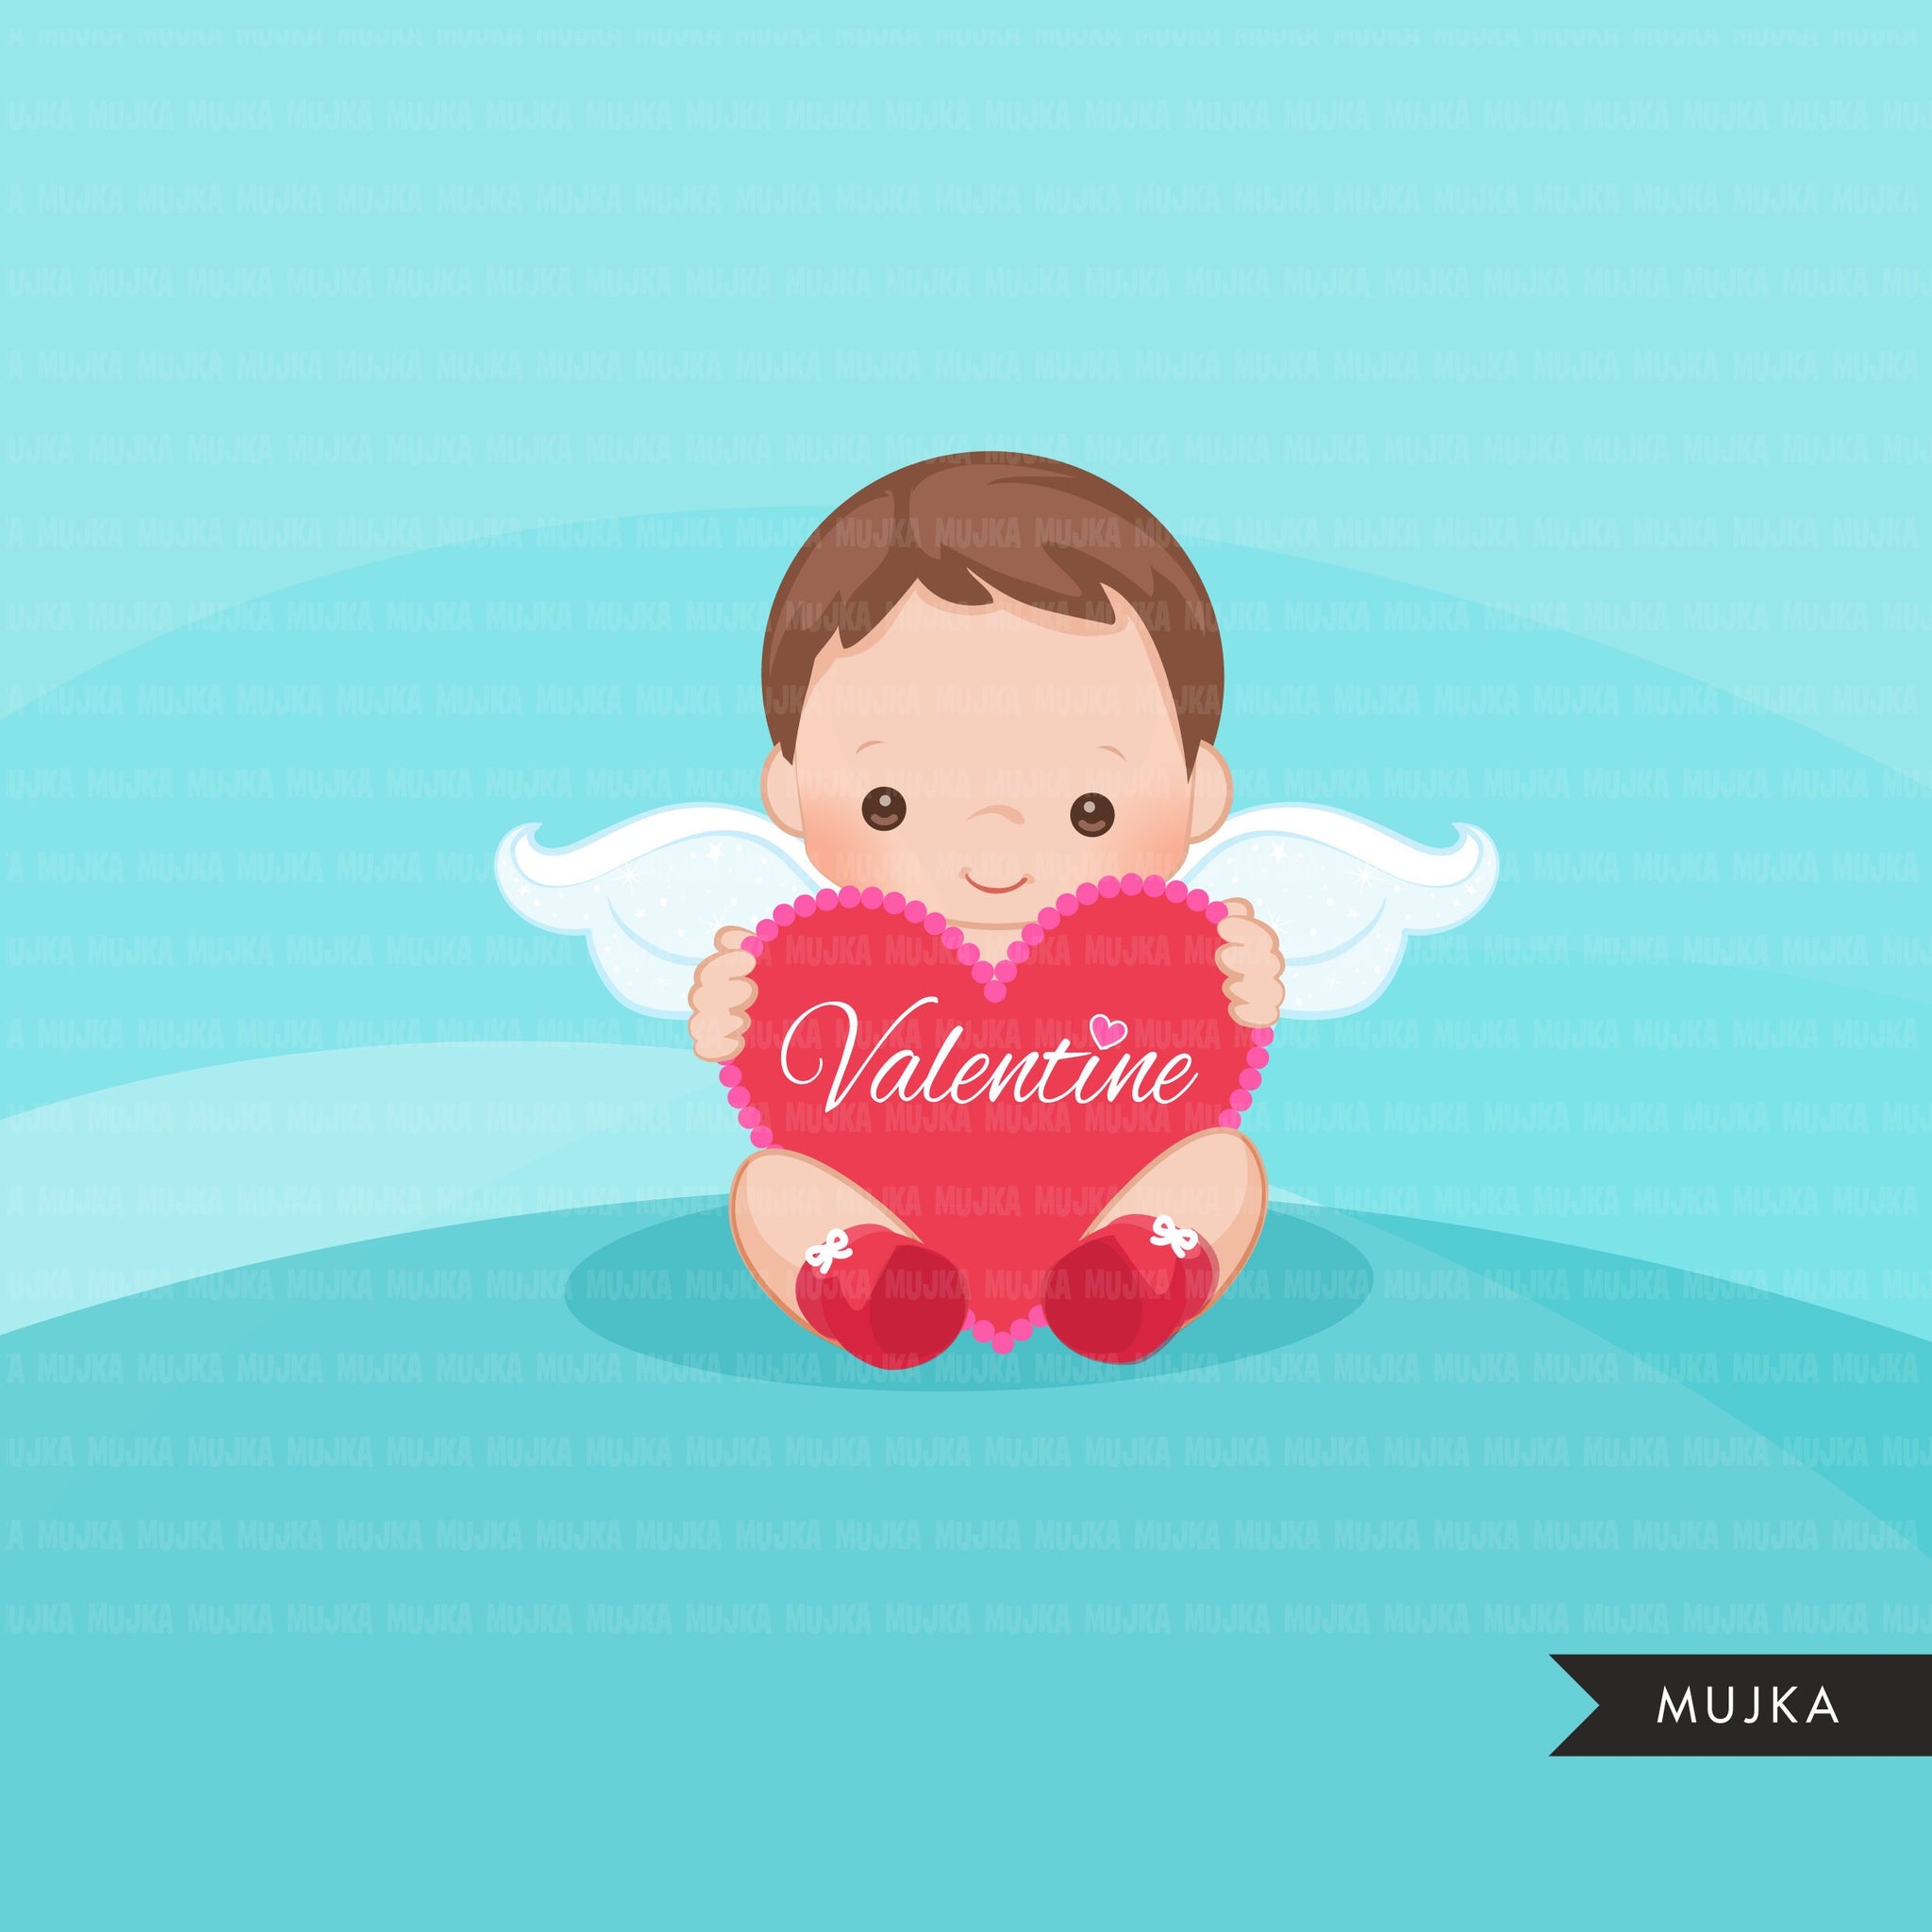 Cupidos de San Valentín, clipart de bebé